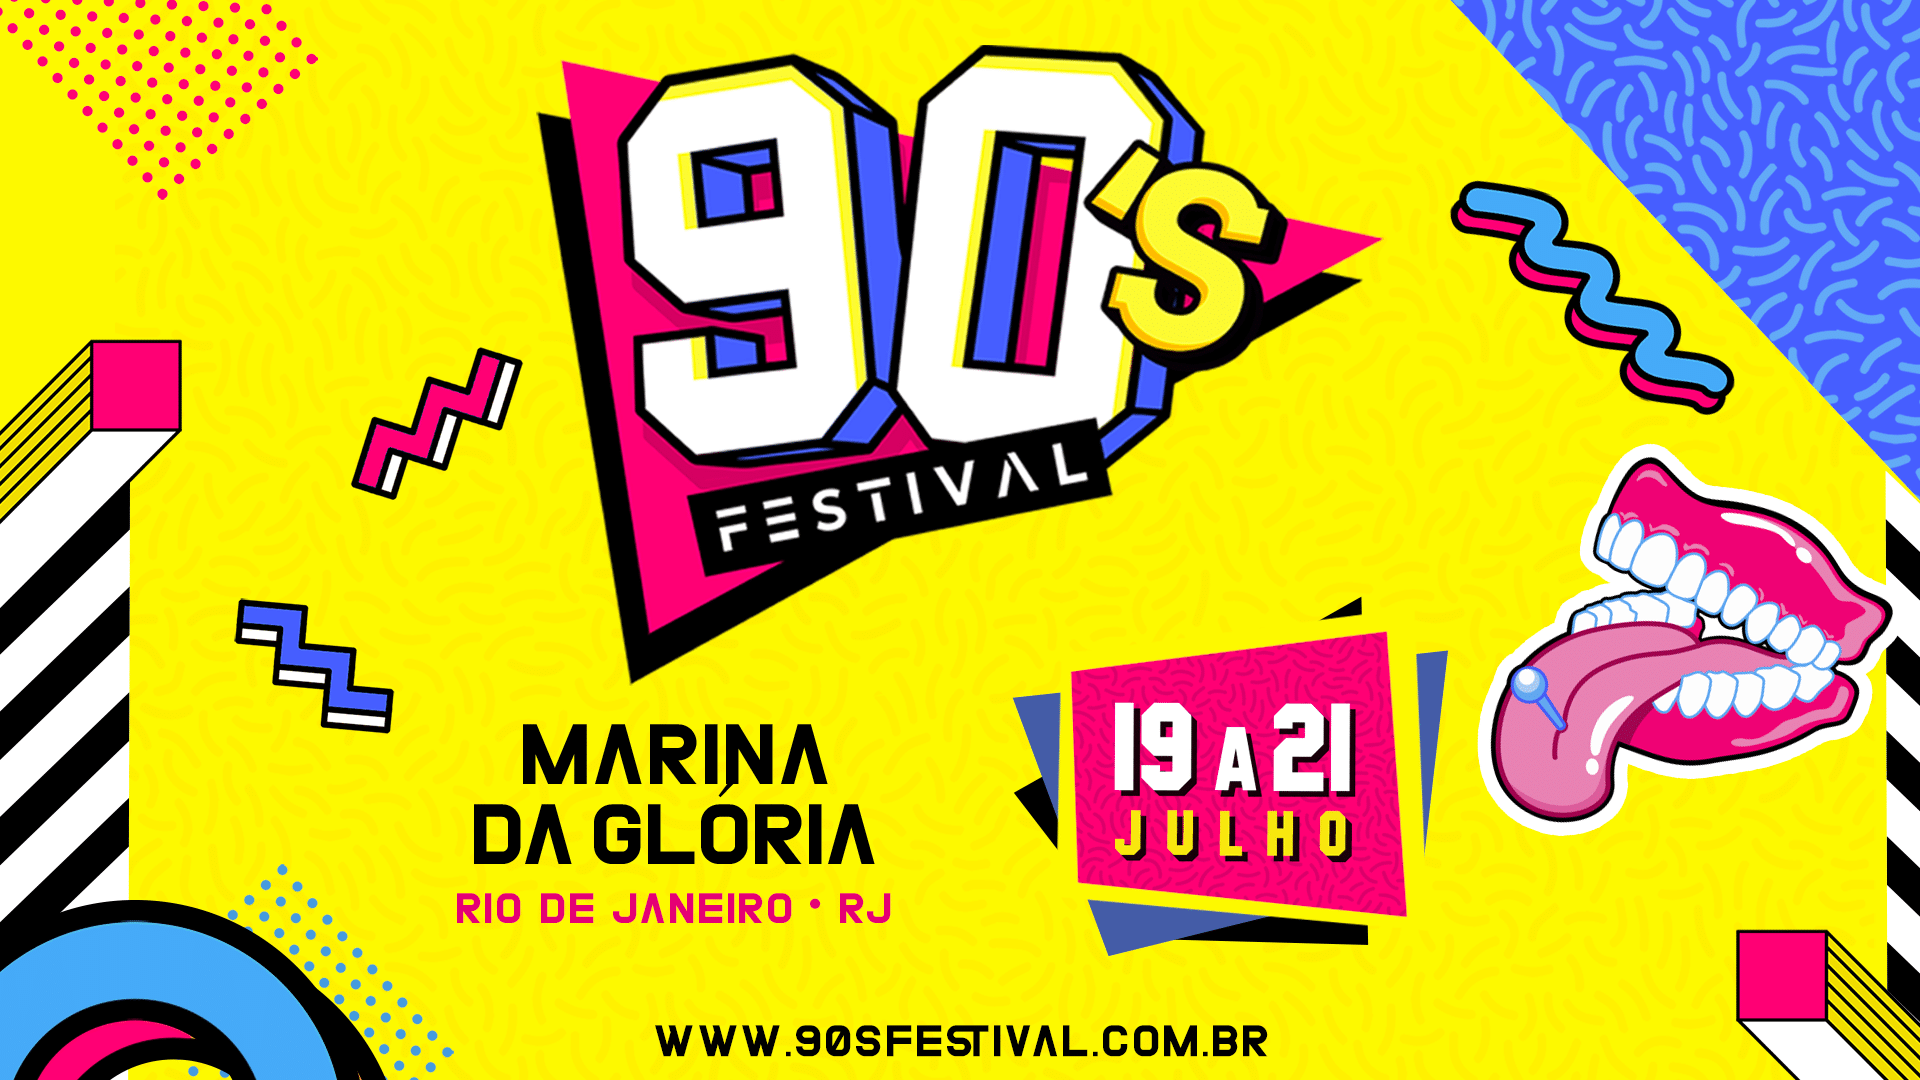 revistaprosaversoearte.com - 90´s Festival | Hits da década prometem agitar as três noites do evento que acontece na Marina da Glória.